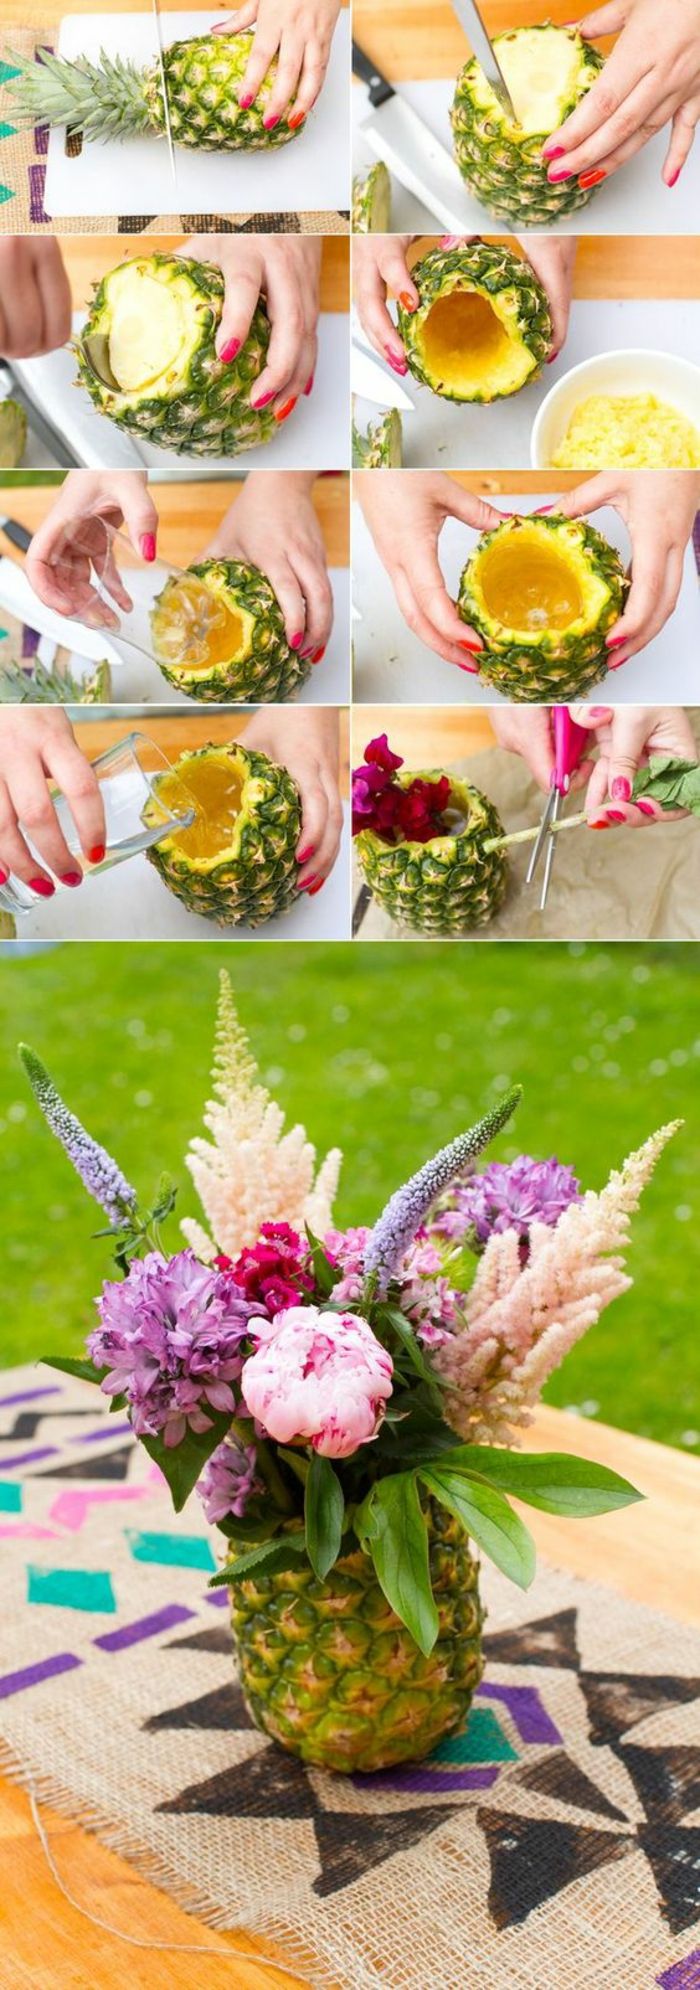 Wykonuj dekoracje wiosenne, stwórz wazon z ananasem z kwiatami, sam przygotuj stół